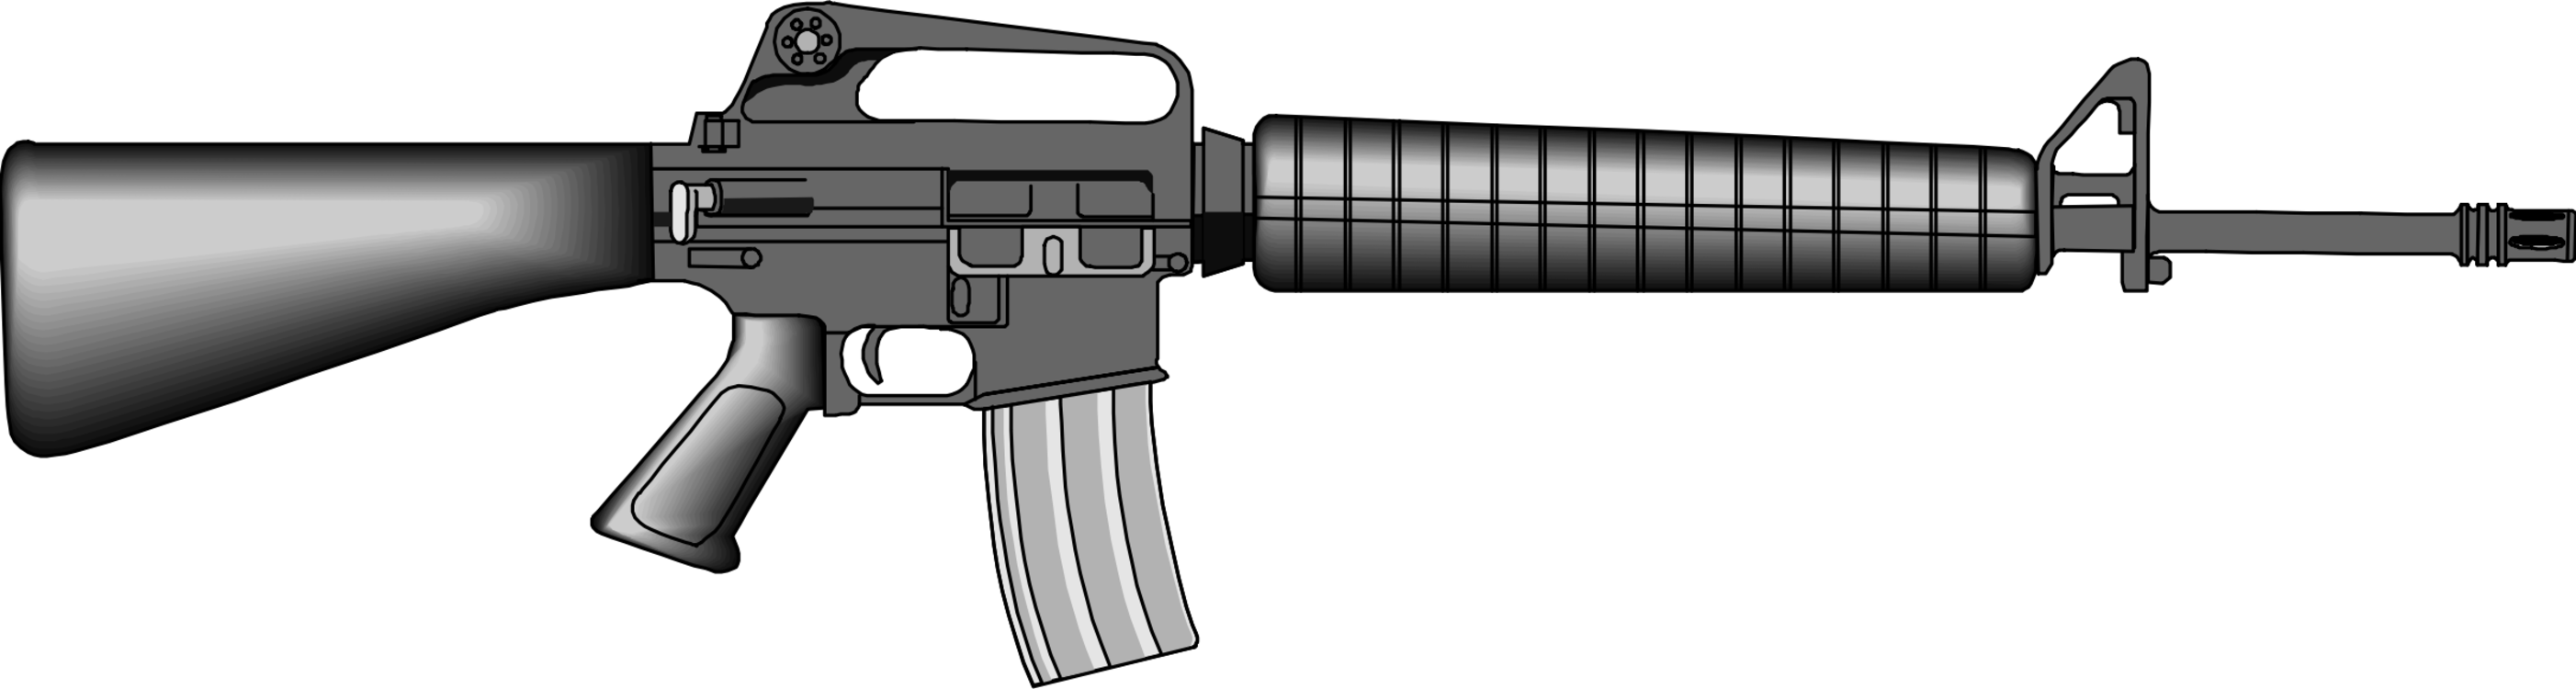 M16 Rifle Weapon Firearm Gun - M16 Clipart (2804x750)